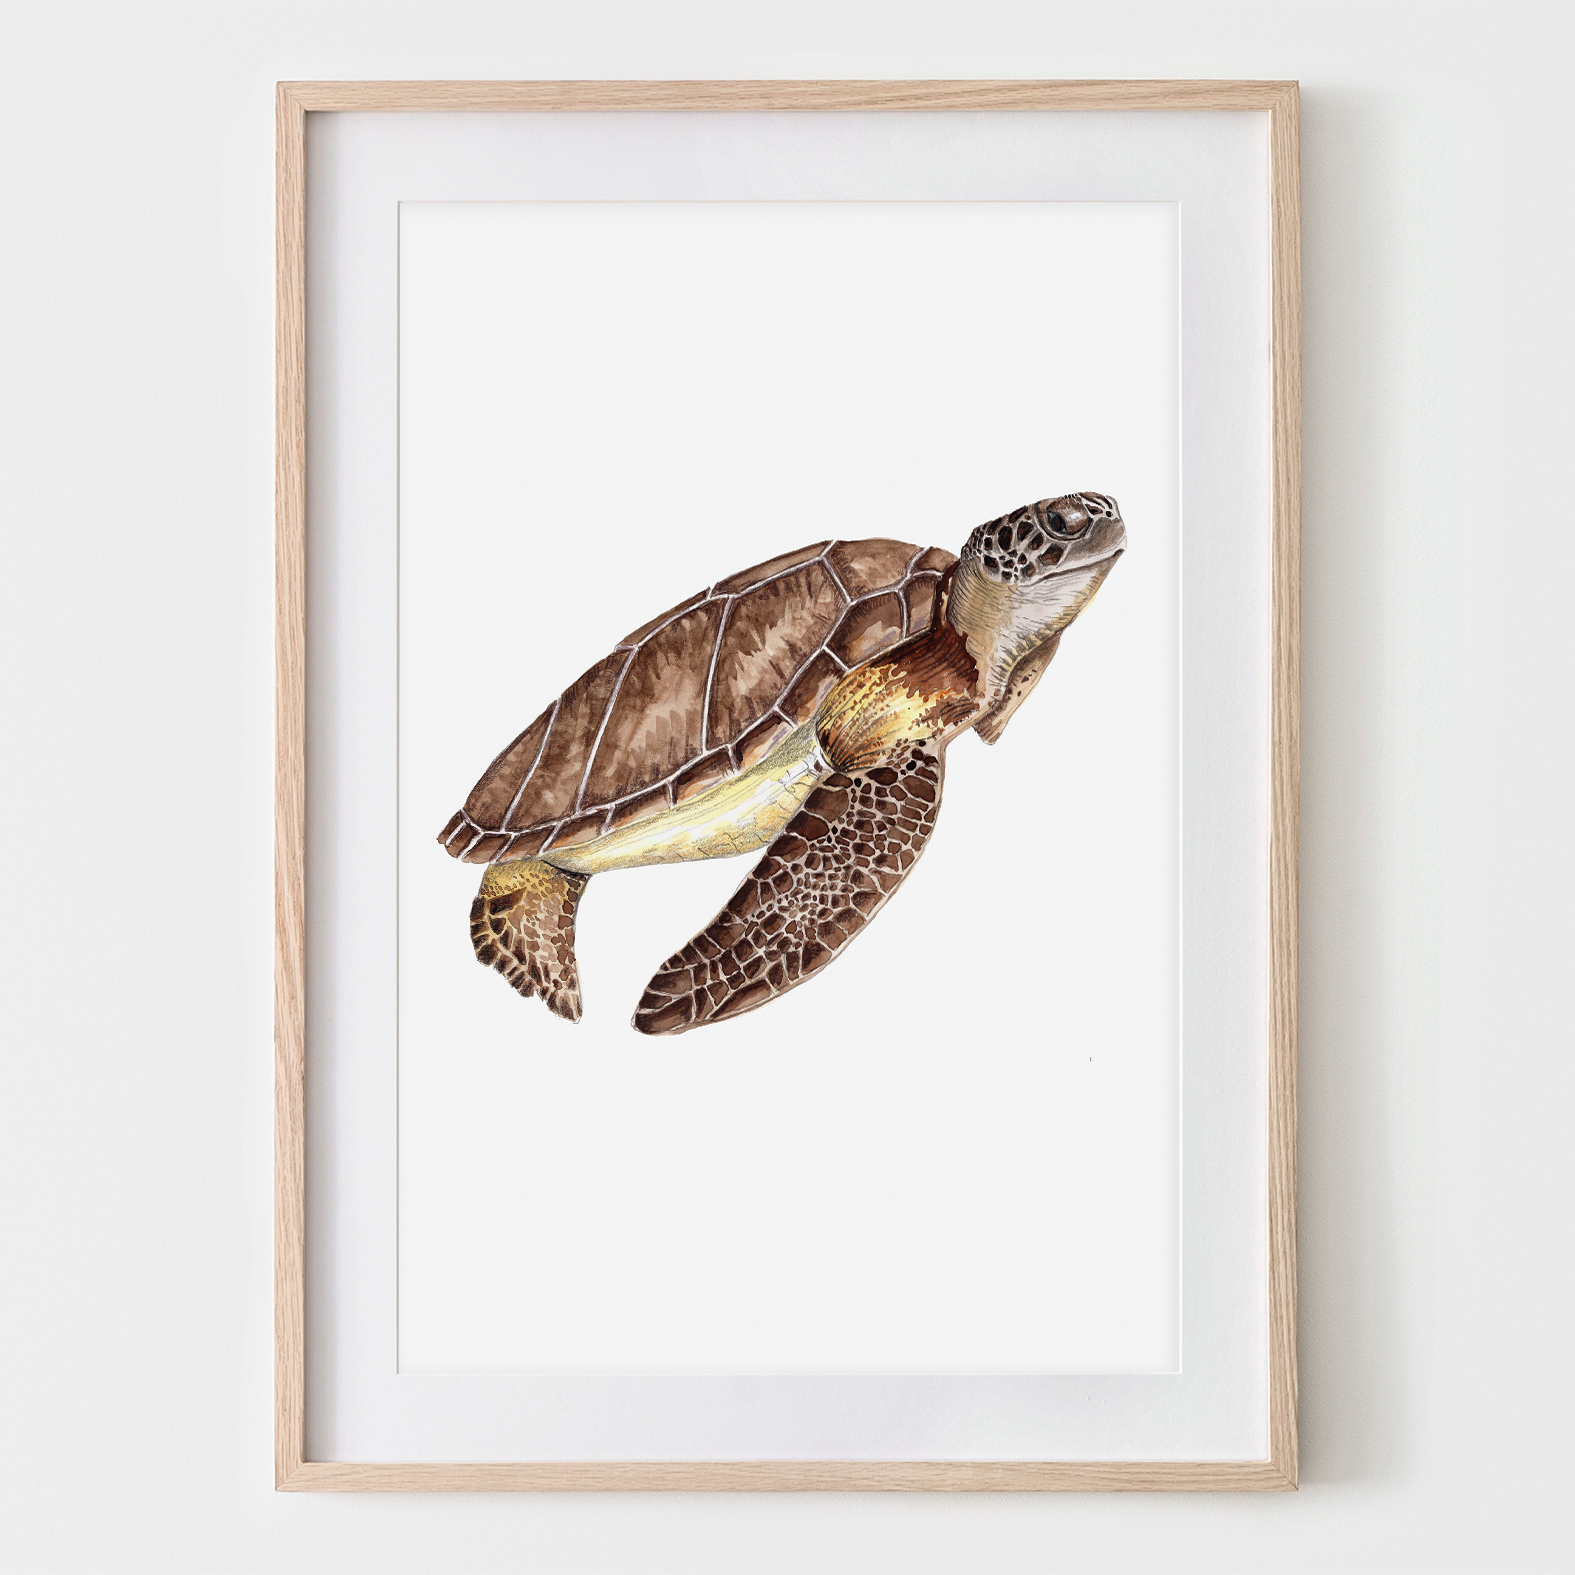 Schildkröte, Fine Art Print, Giclée Print, Poster, Kunstdruck, Zeichnung Meerestier